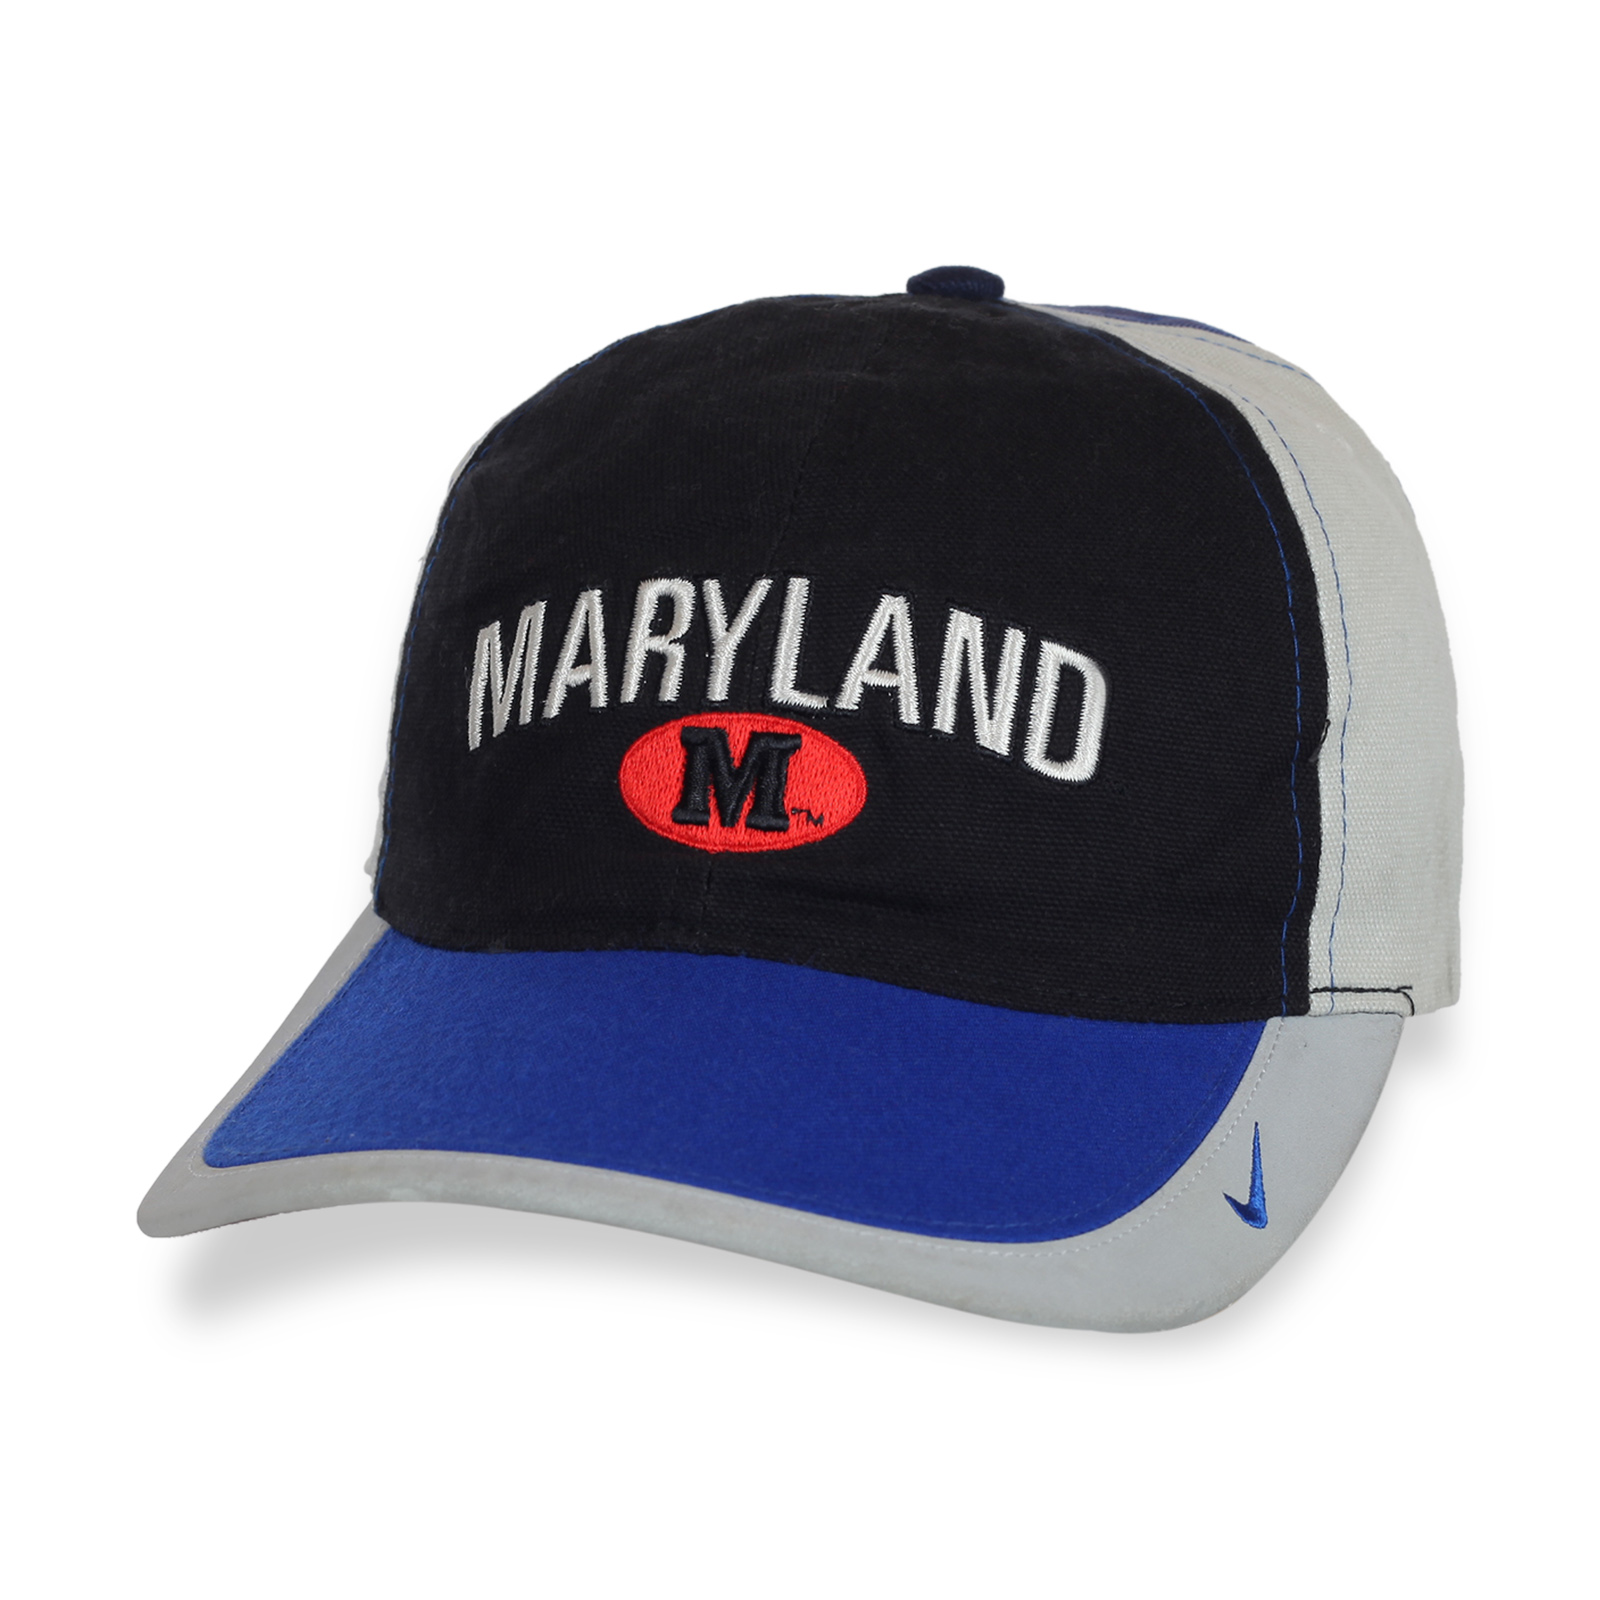 Купить кепку эффектную Maryland по демократичной цене